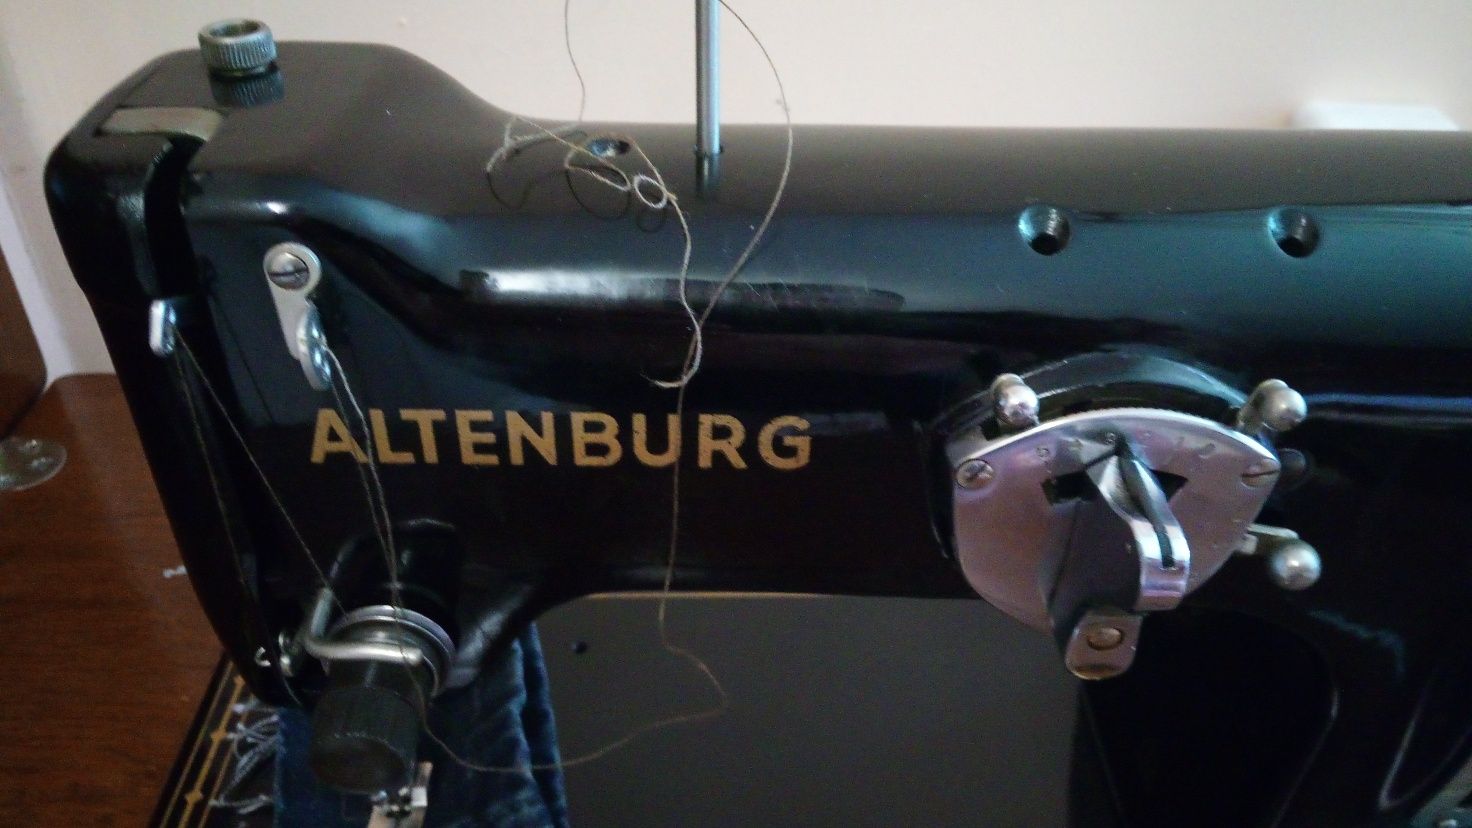 Швейная машина Altenburg